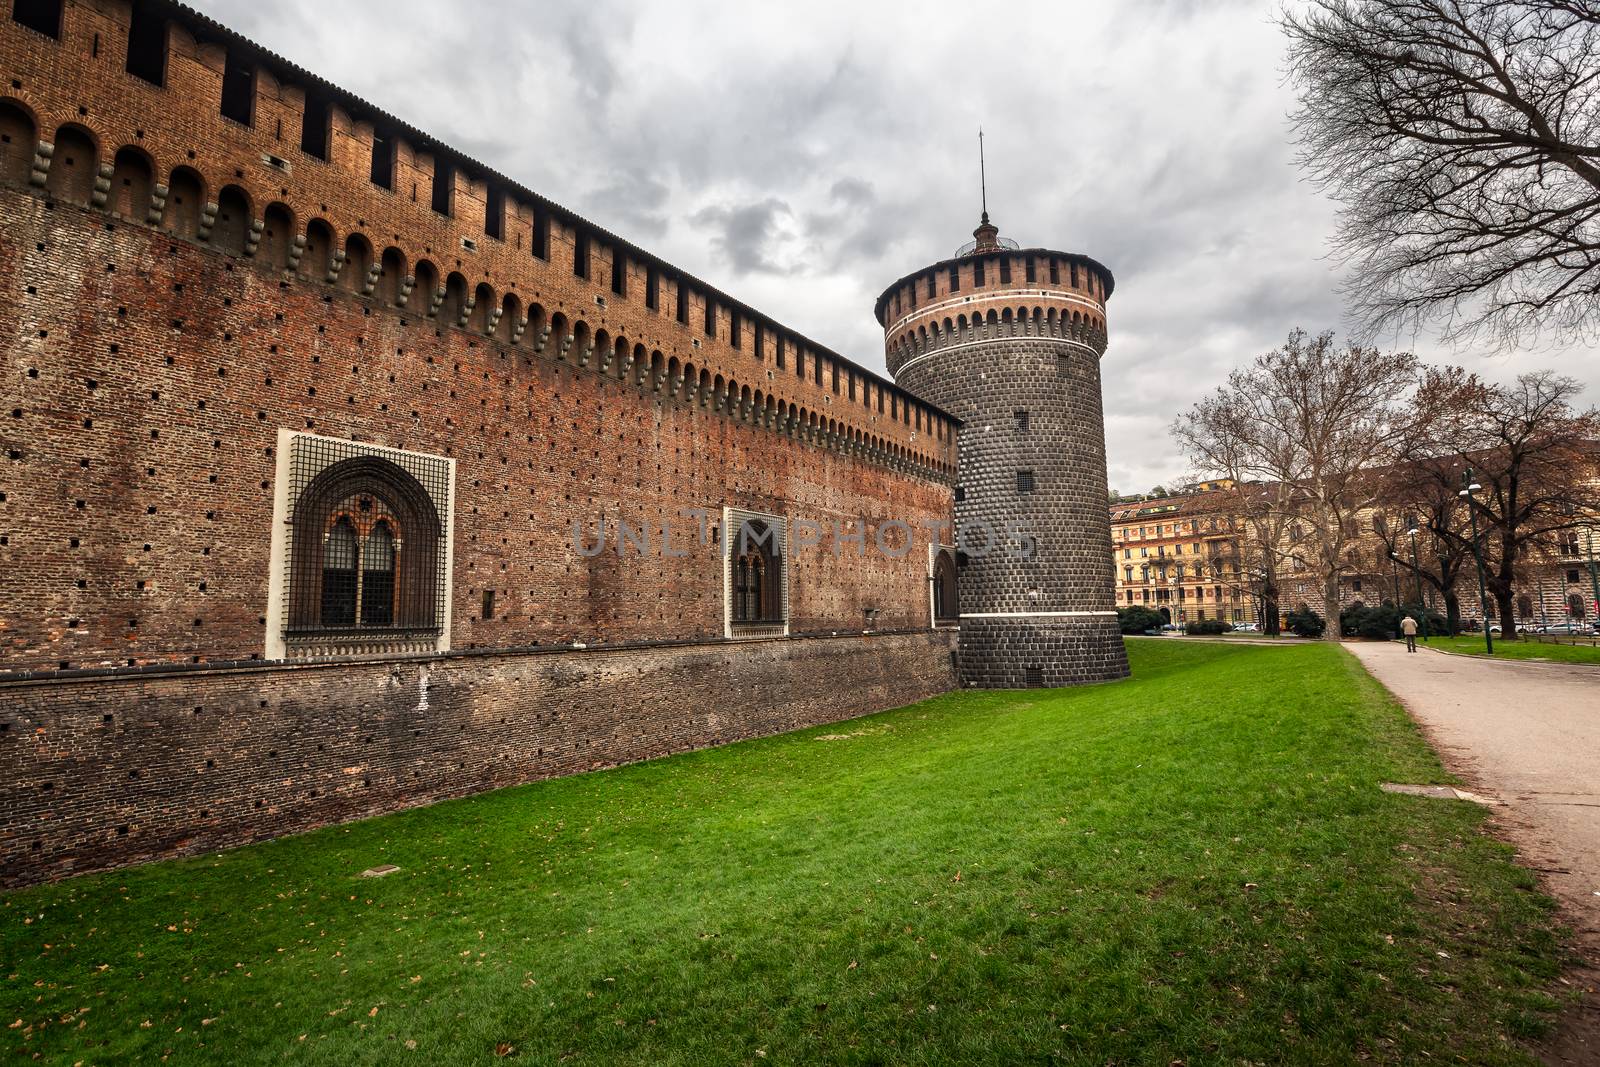 The Outer Wall of Castello Sforzesco (Sforza Castle) in Milan, I by anshar